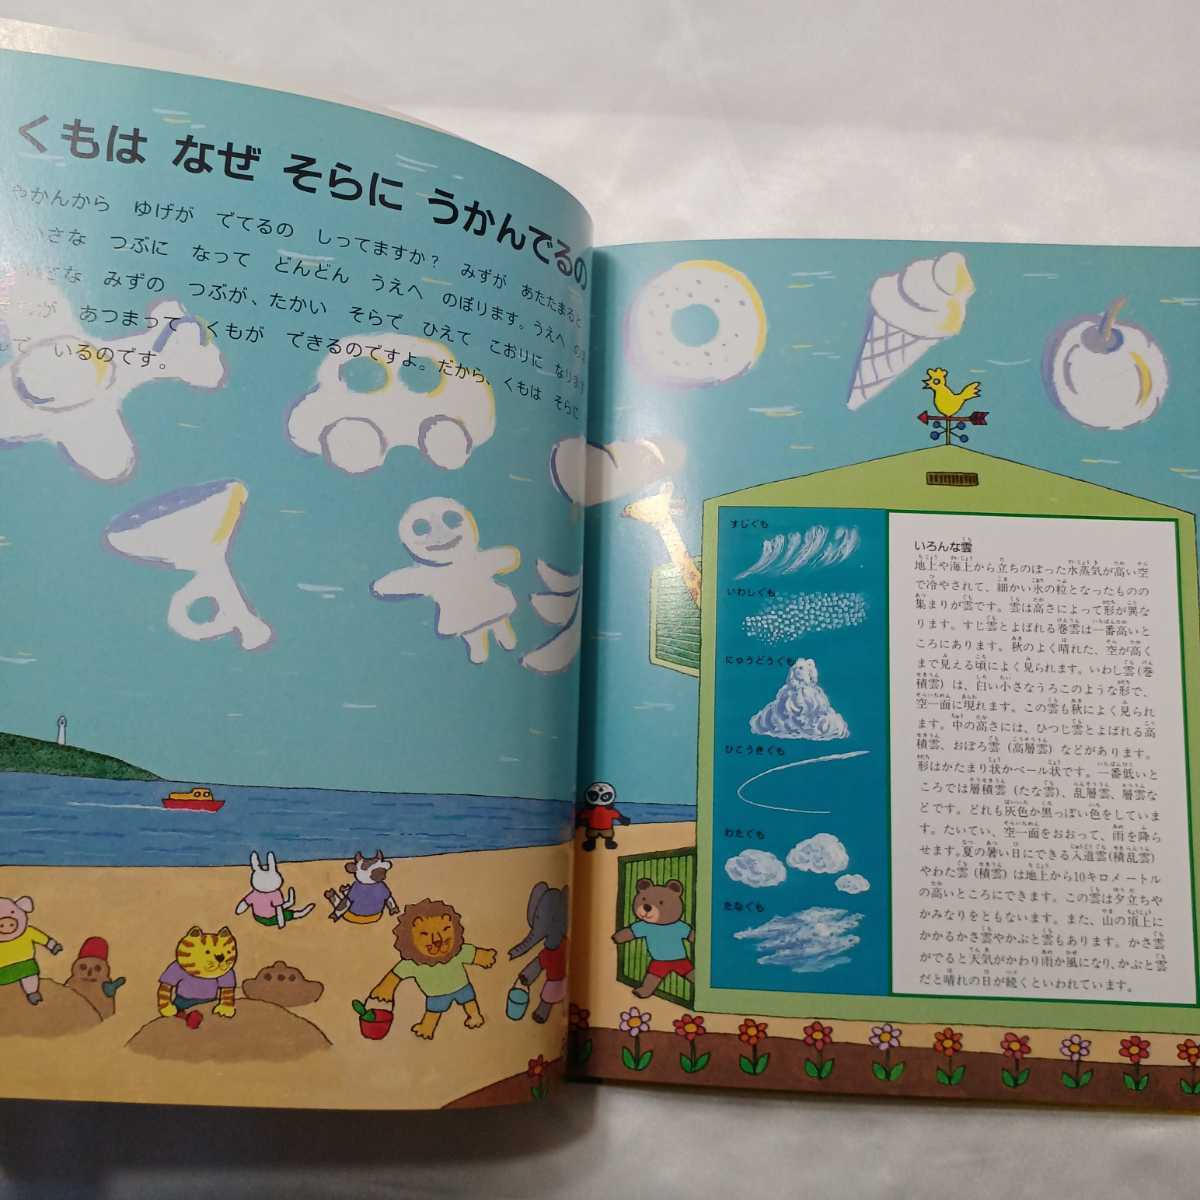 zaa-415♪日本学校図書株式会社のなぜなにブック〈10〉きしょう・ちきゅう・うちゅう　日本学校図書株式会社　2008/01/10_画像5